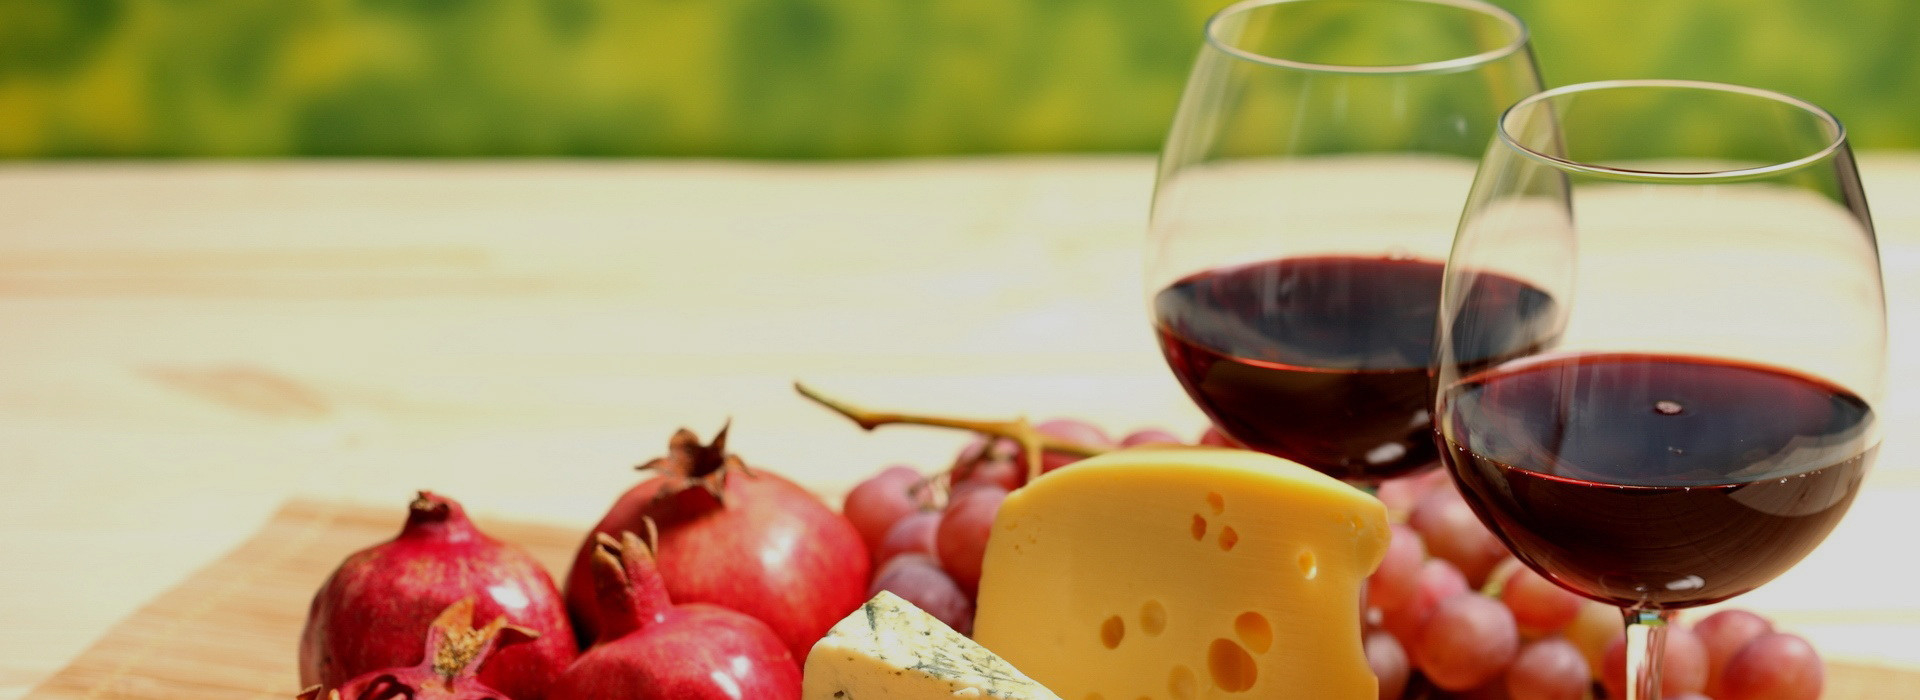 Früchte Wein mit Käse